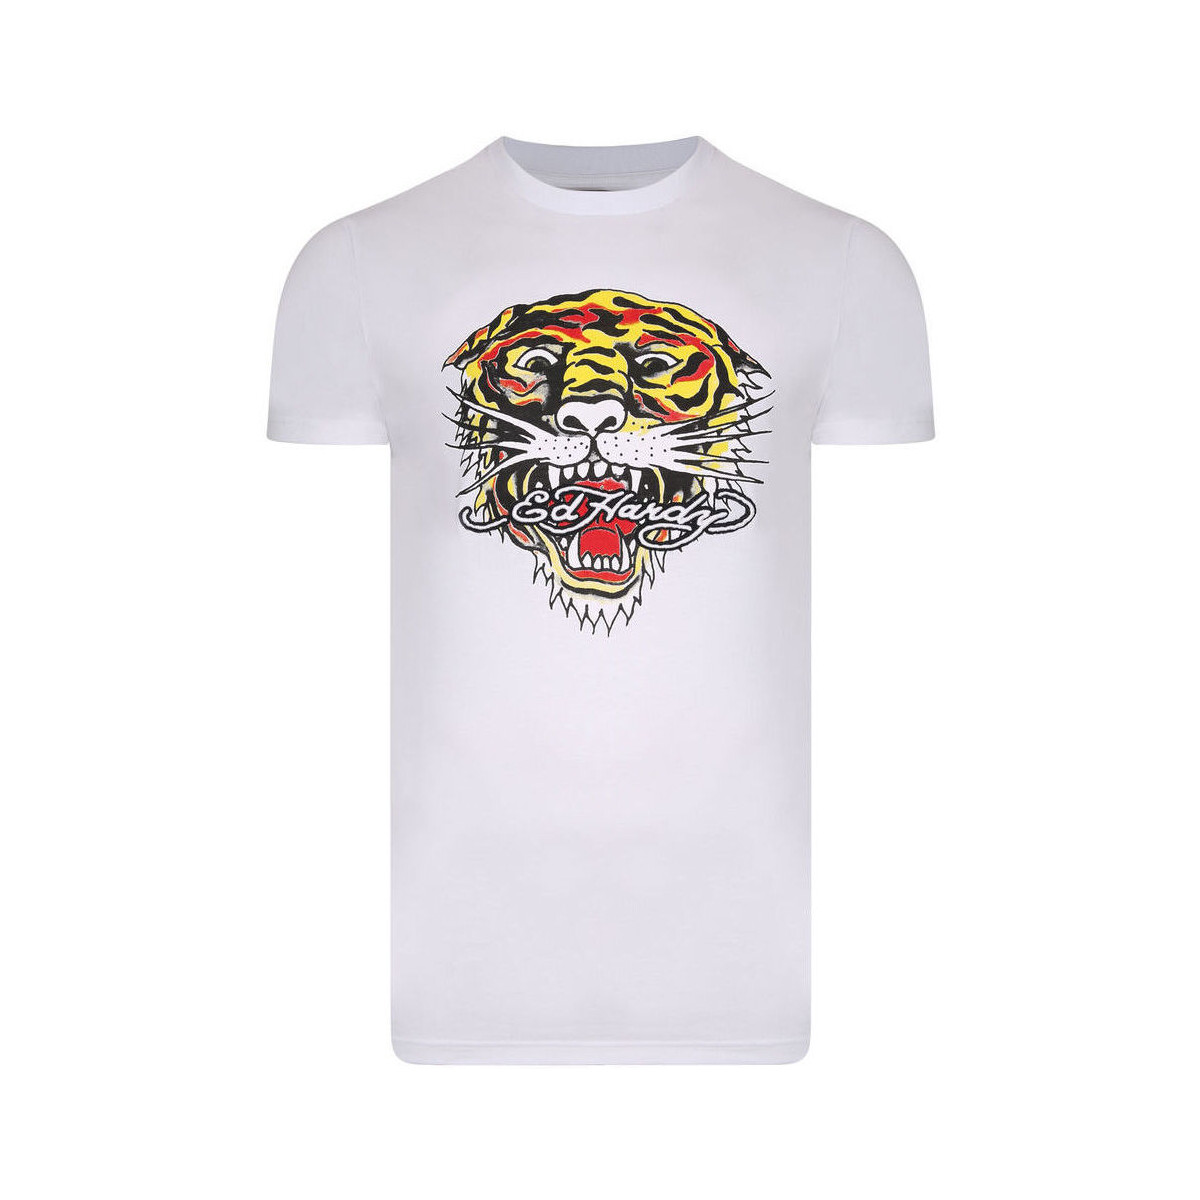 Oblačila Moški Majice s kratkimi rokavi Ed Hardy Tiger mouth graphic t-shirt white Bela